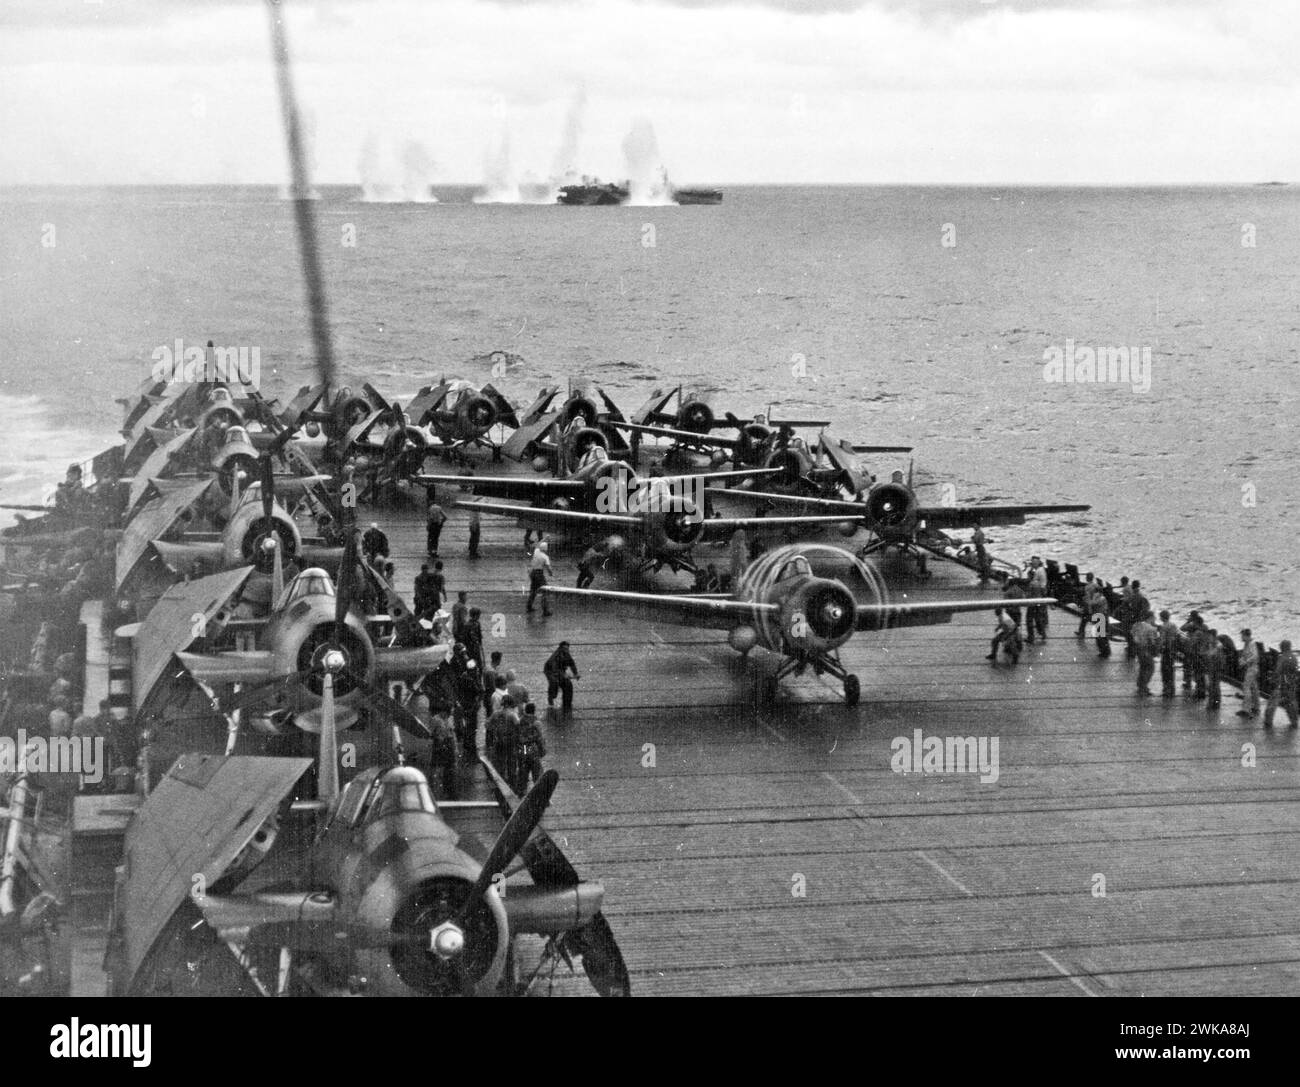 BATTAGLIA DEL GOLFO DI LEYTE 23-26 OTTOBRE 1944. Bombardamento giapponese della USS White Plains 25 ottobre 1944 mentre i caccia americani si preparano a decollare da un'altra nave. Foto: US Navy Foto Stock